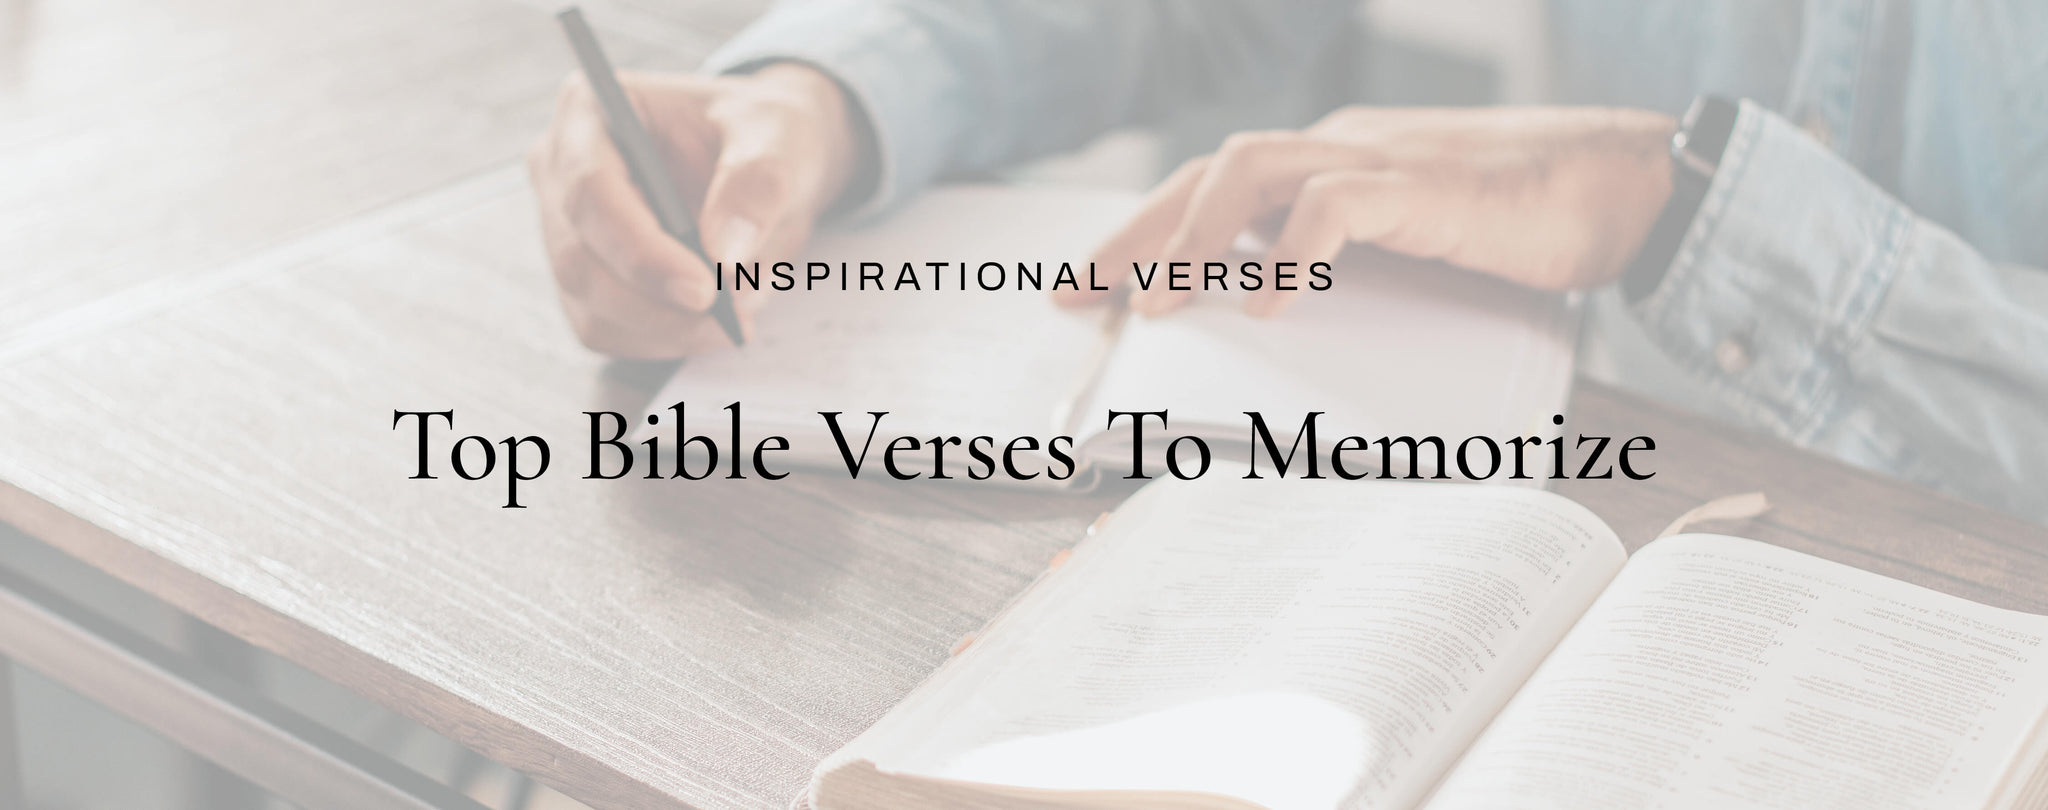 best bible verses to memorize